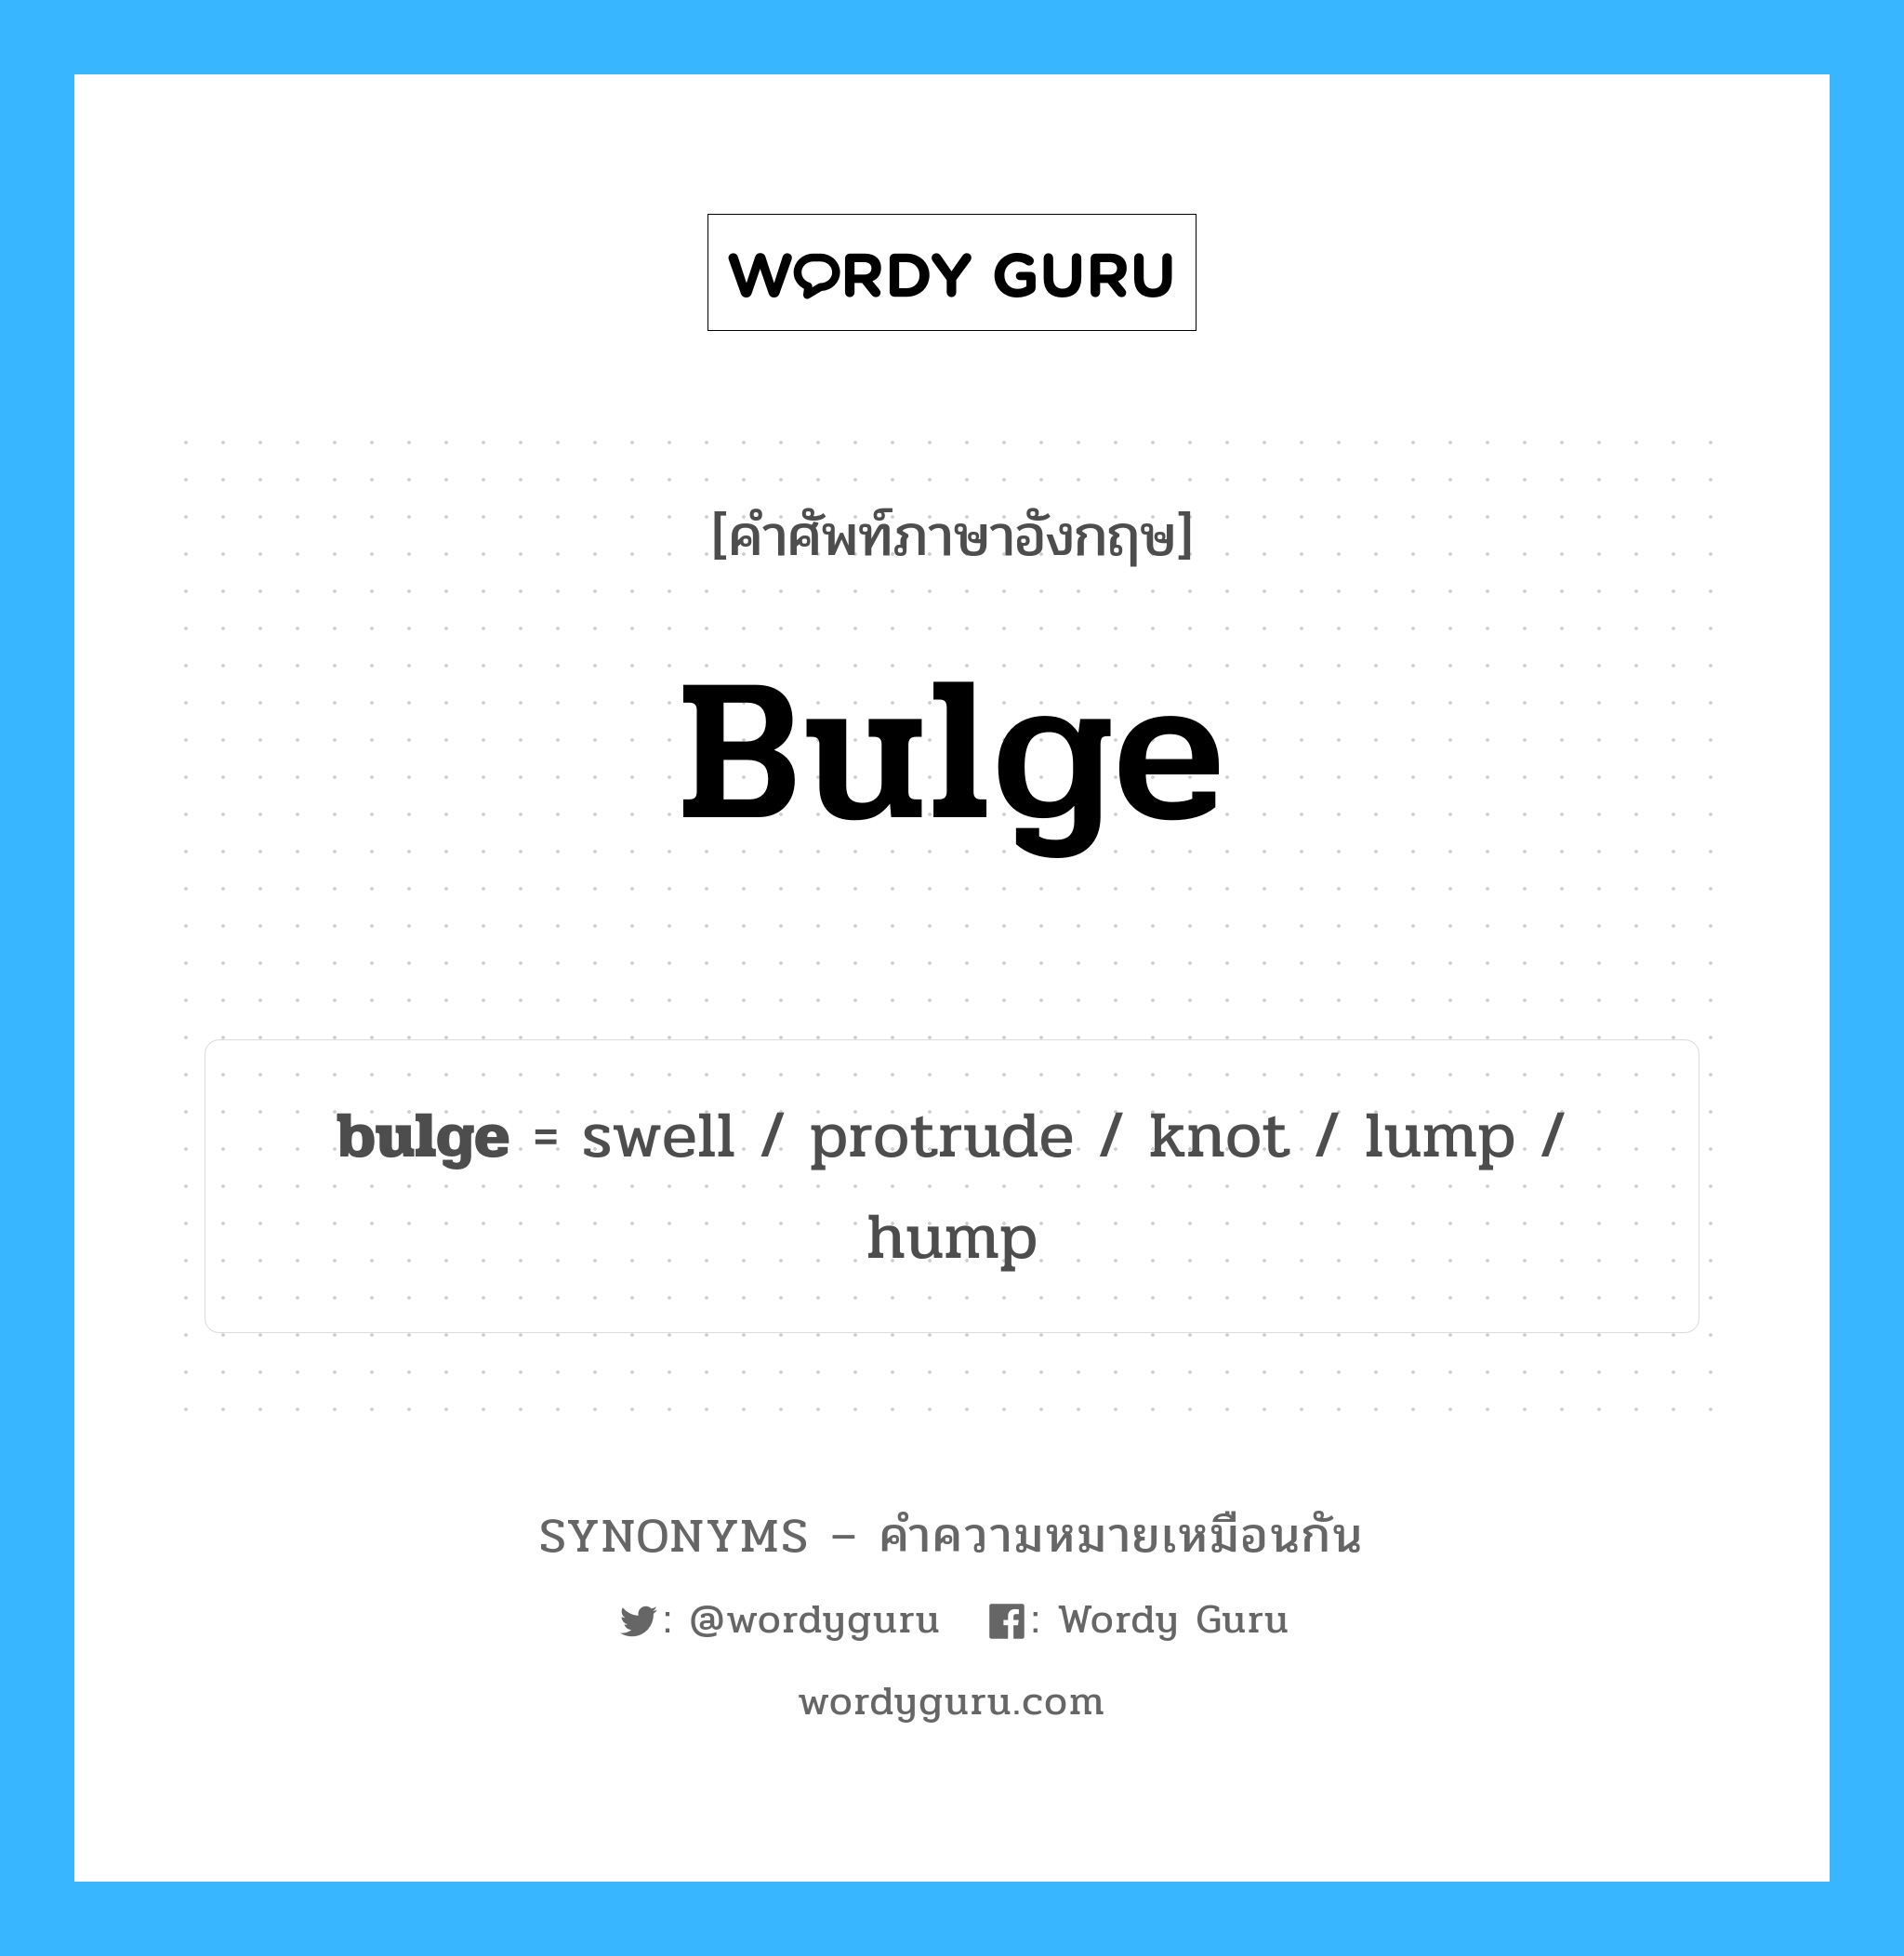 lump เป็นหนึ่งใน bulge และมีคำอื่น ๆ อีกดังนี้, คำศัพท์ภาษาอังกฤษ lump ความหมายคล้ายกันกับ bulge แปลว่า ก้อน หมวด bulge